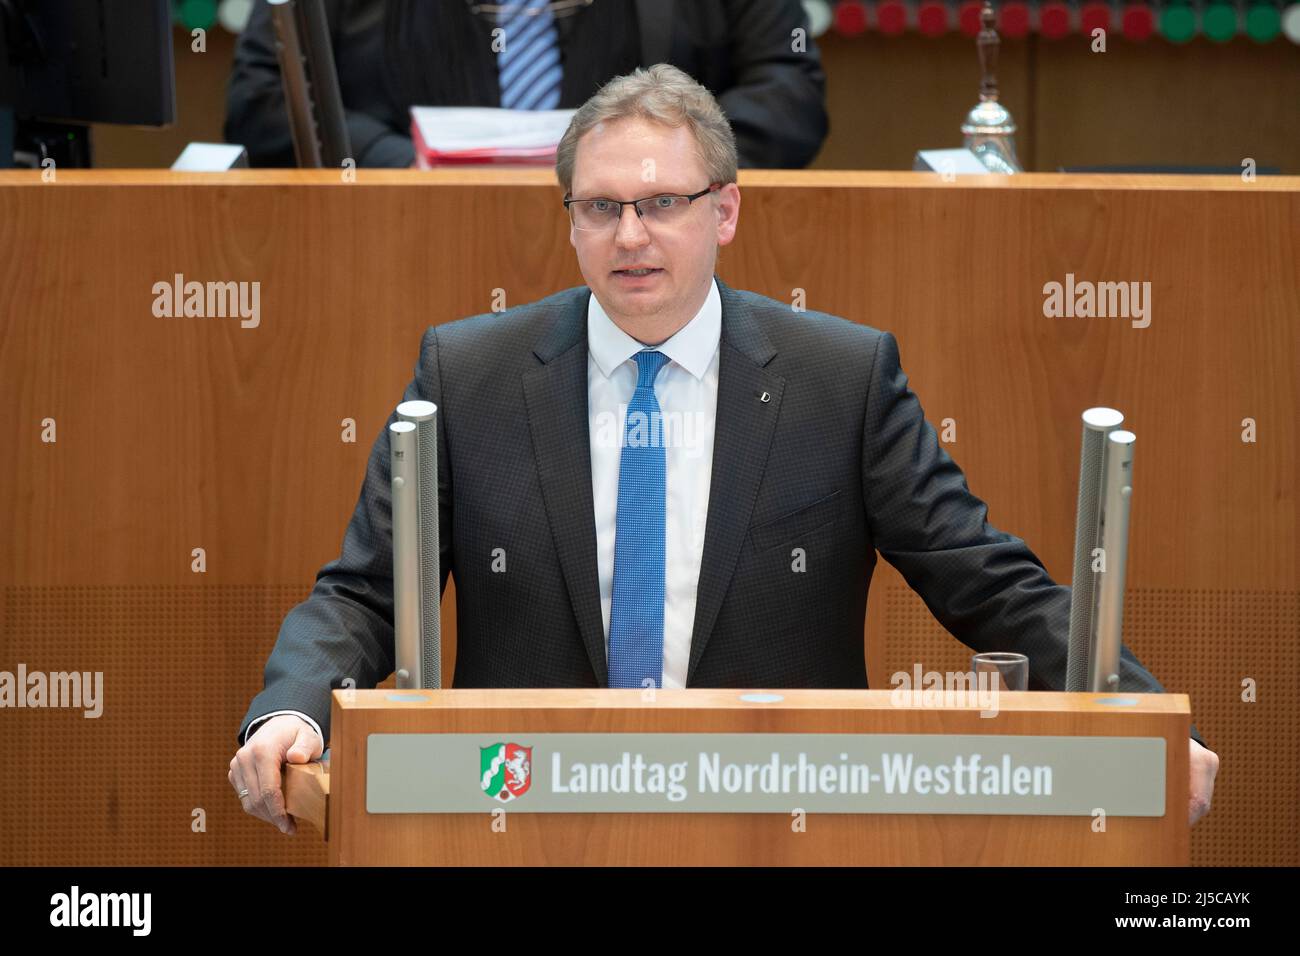 el dr. Dennis MAELZER, grupo parlamentario del SPD, durante su discurso TOP 4: Ley Estatal de Protección de la Infancia NRW y enmienda de la Ley de Educación de la Infancia, proyecto de ley del gobierno estatal, 169th sesión del parlamento estatal de Renania del Norte-Westfalia, en el parlamento estatal de Renania del Norte-Westfalia, Duesseldorf el 27th de enero de 2022, ÃÂ Foto de stock